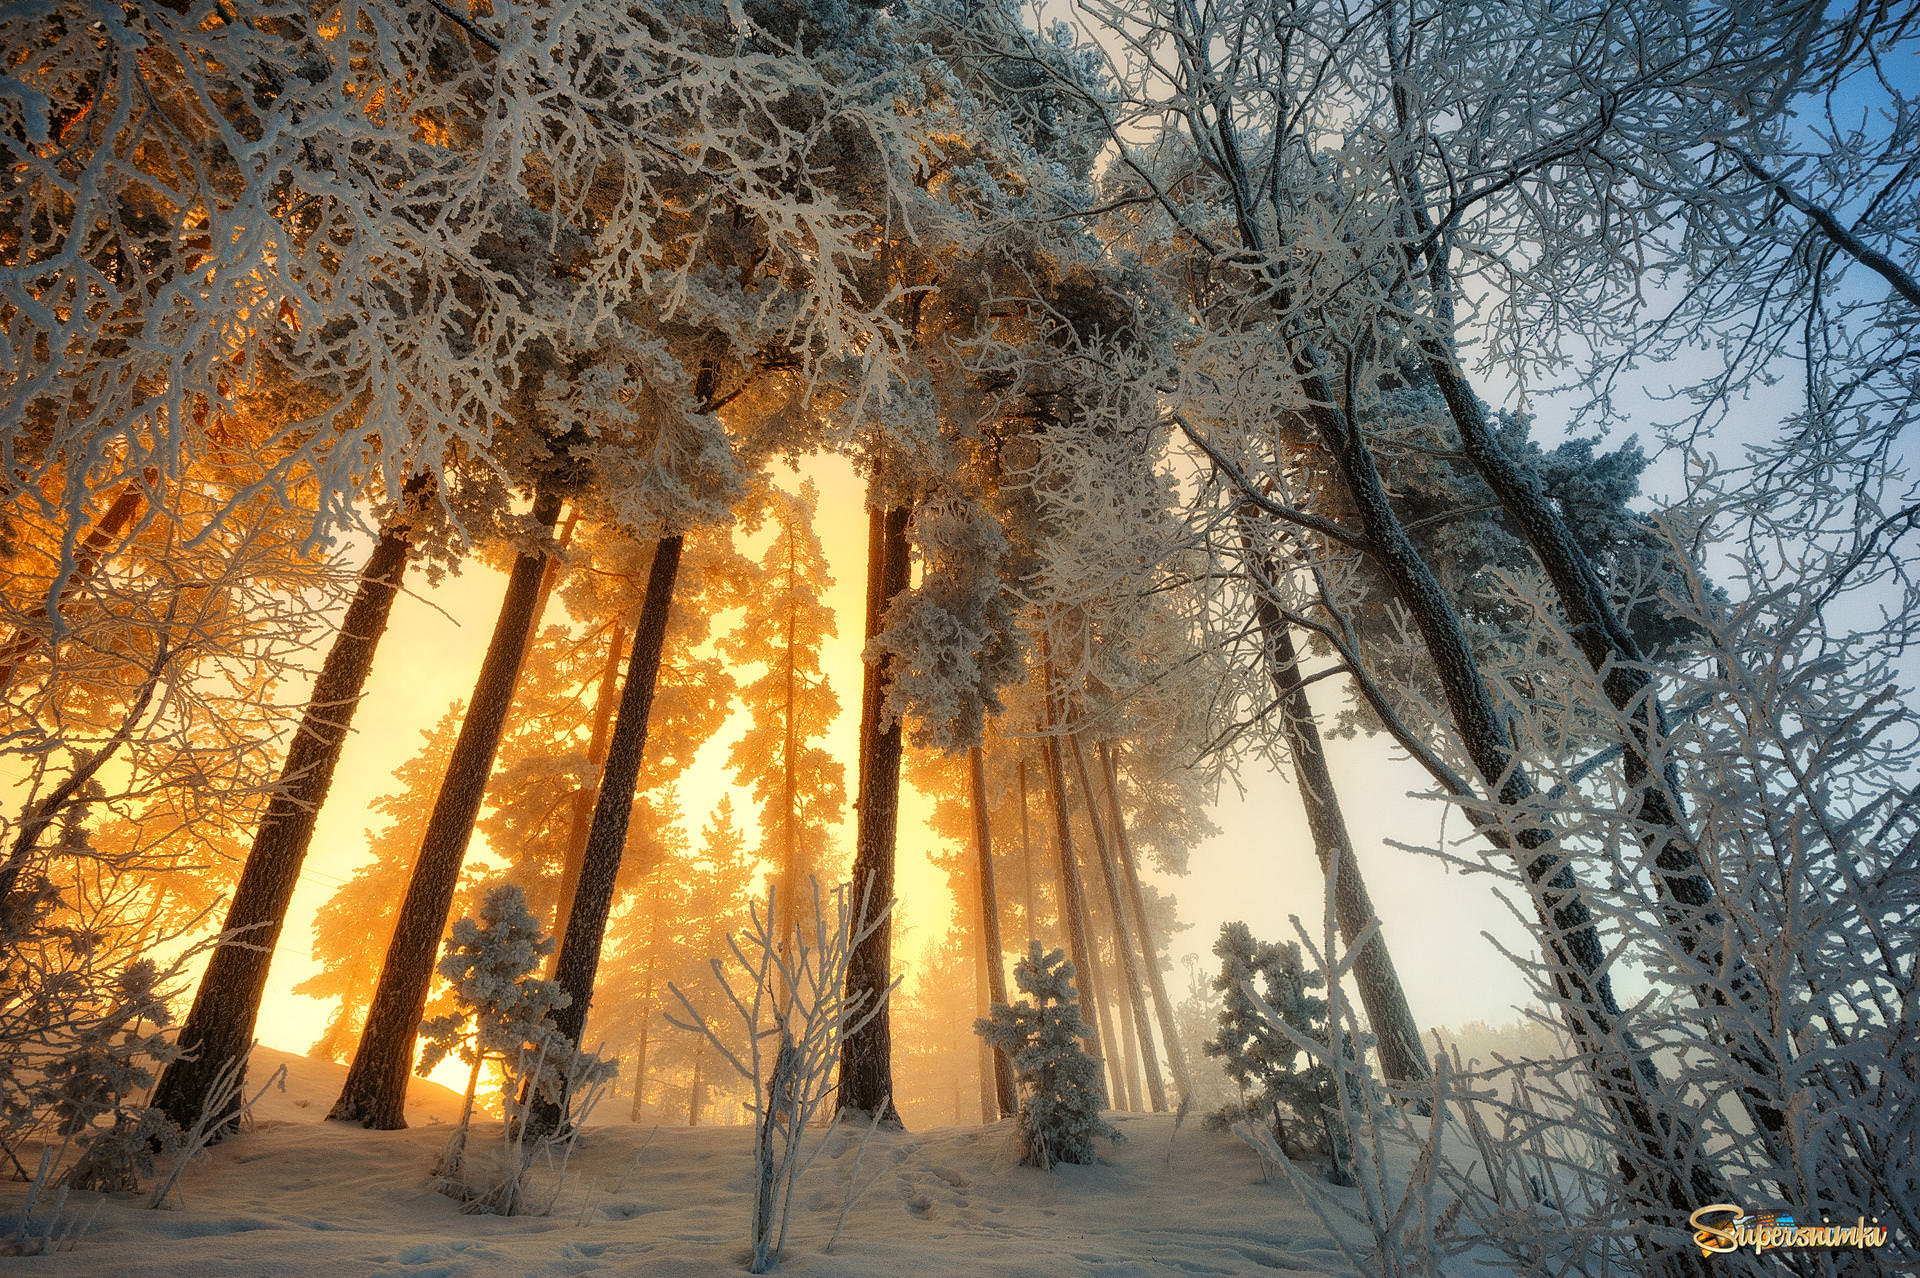 Фф и в морозном лесу навеки останусь. Зима в лесу. Морозное утро в лесу. Утро в зимнем лесу. Рассвет в зимнем лесу.